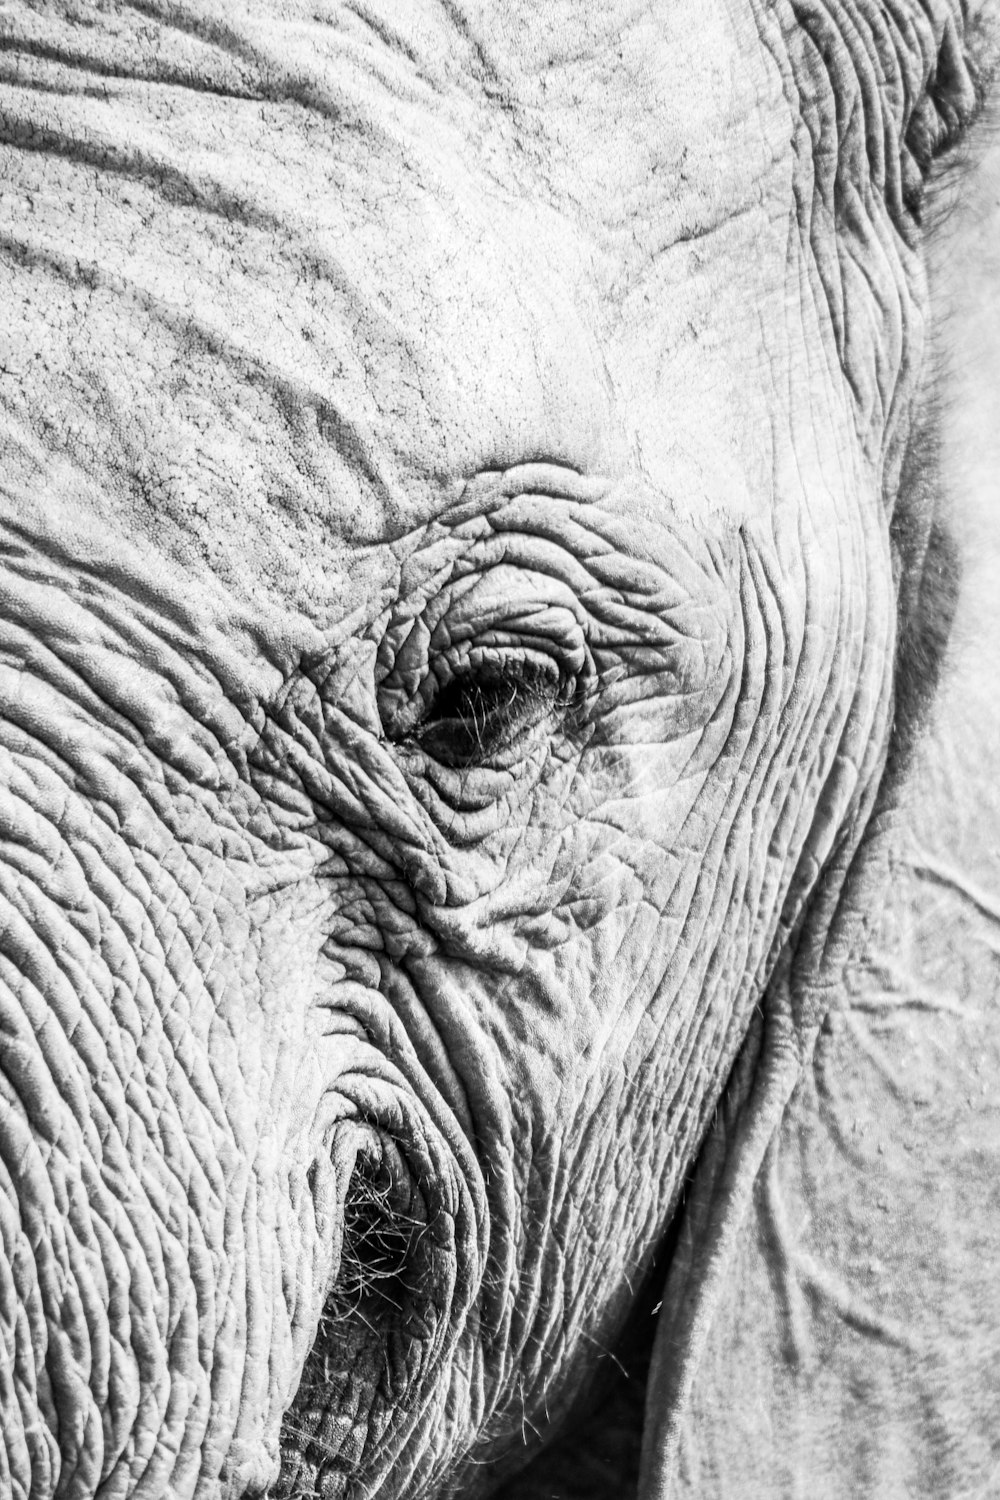 회색 코끼리 얼굴 스케치